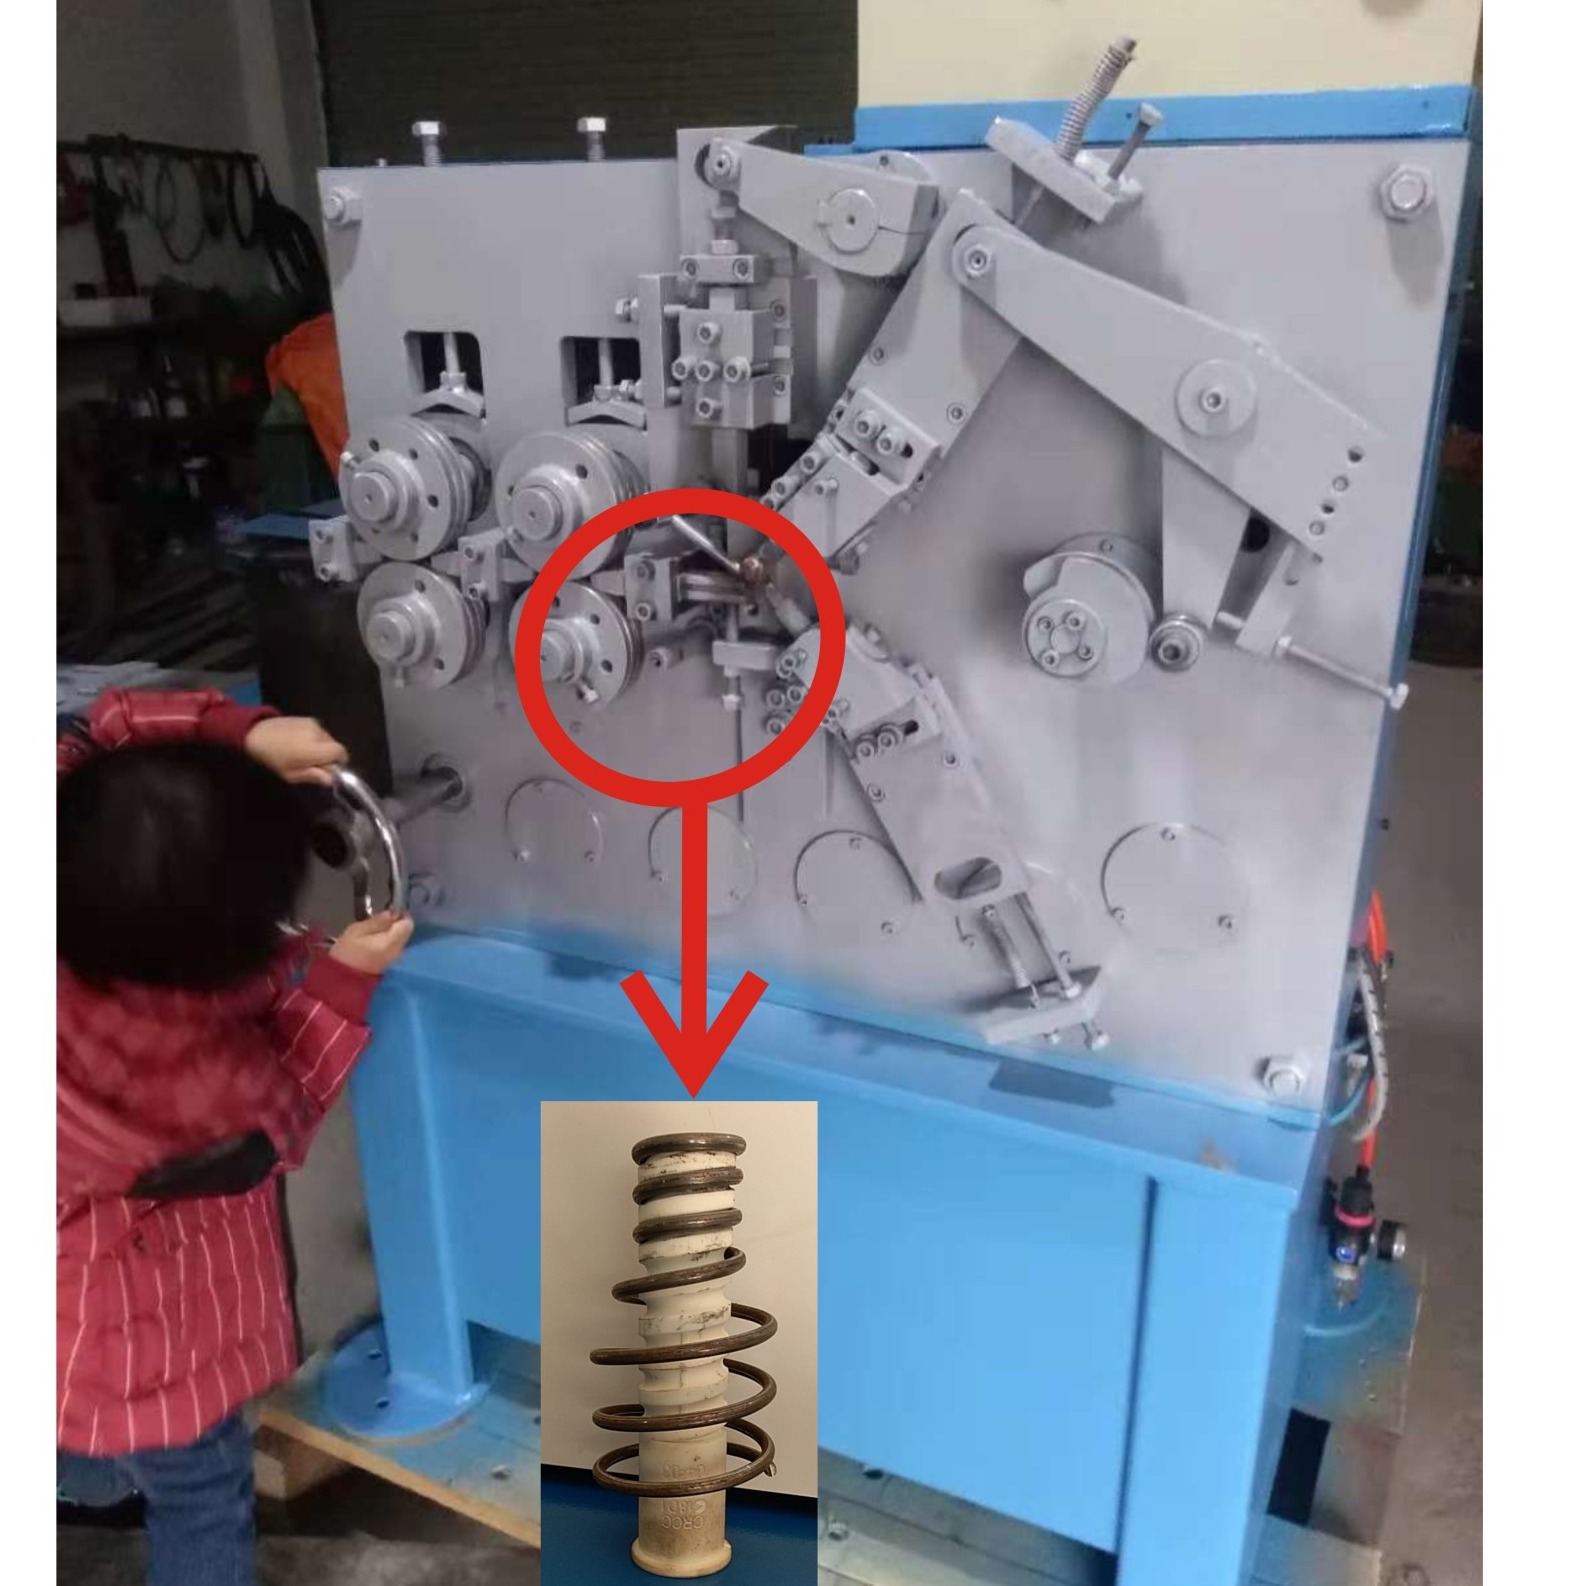 弹簧机 浙江弹簧机生产厂家 出口弹簧机供应商 温州欣达弹簧机厂生产自动弹簧机械设备图片